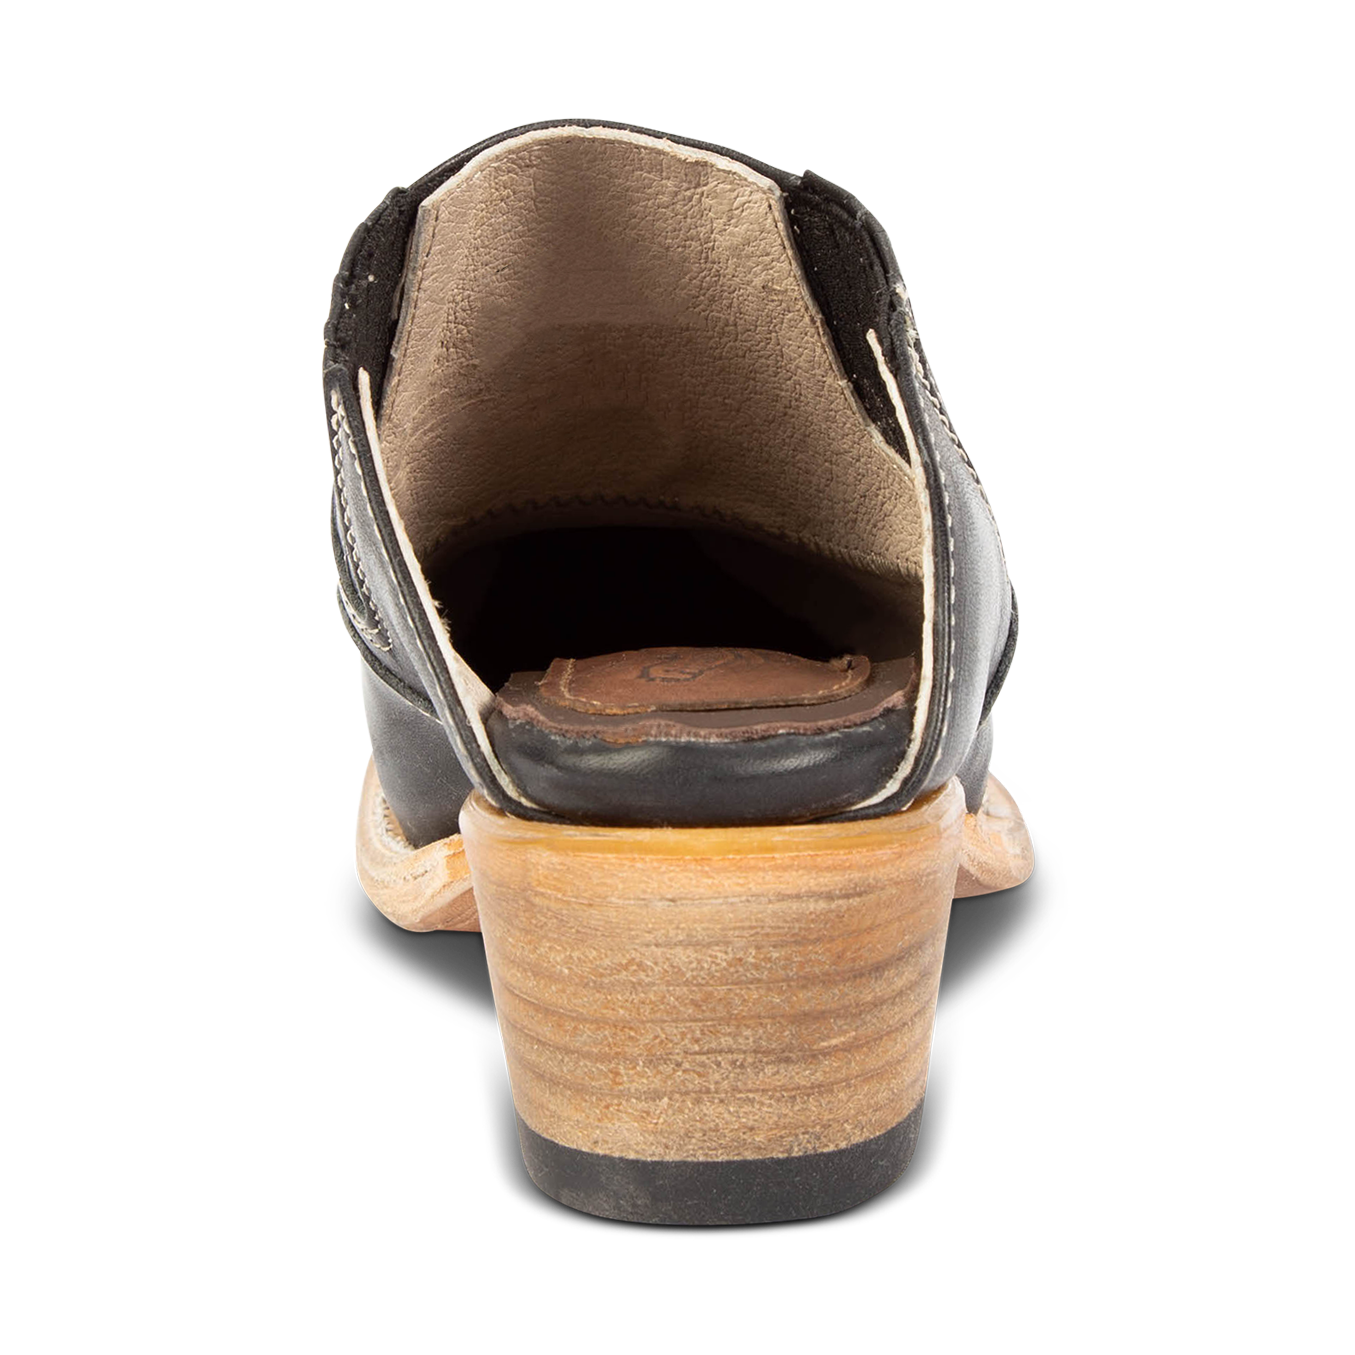 Back view showing wooden heel on FREEBIRD women's Wentworth black western mule